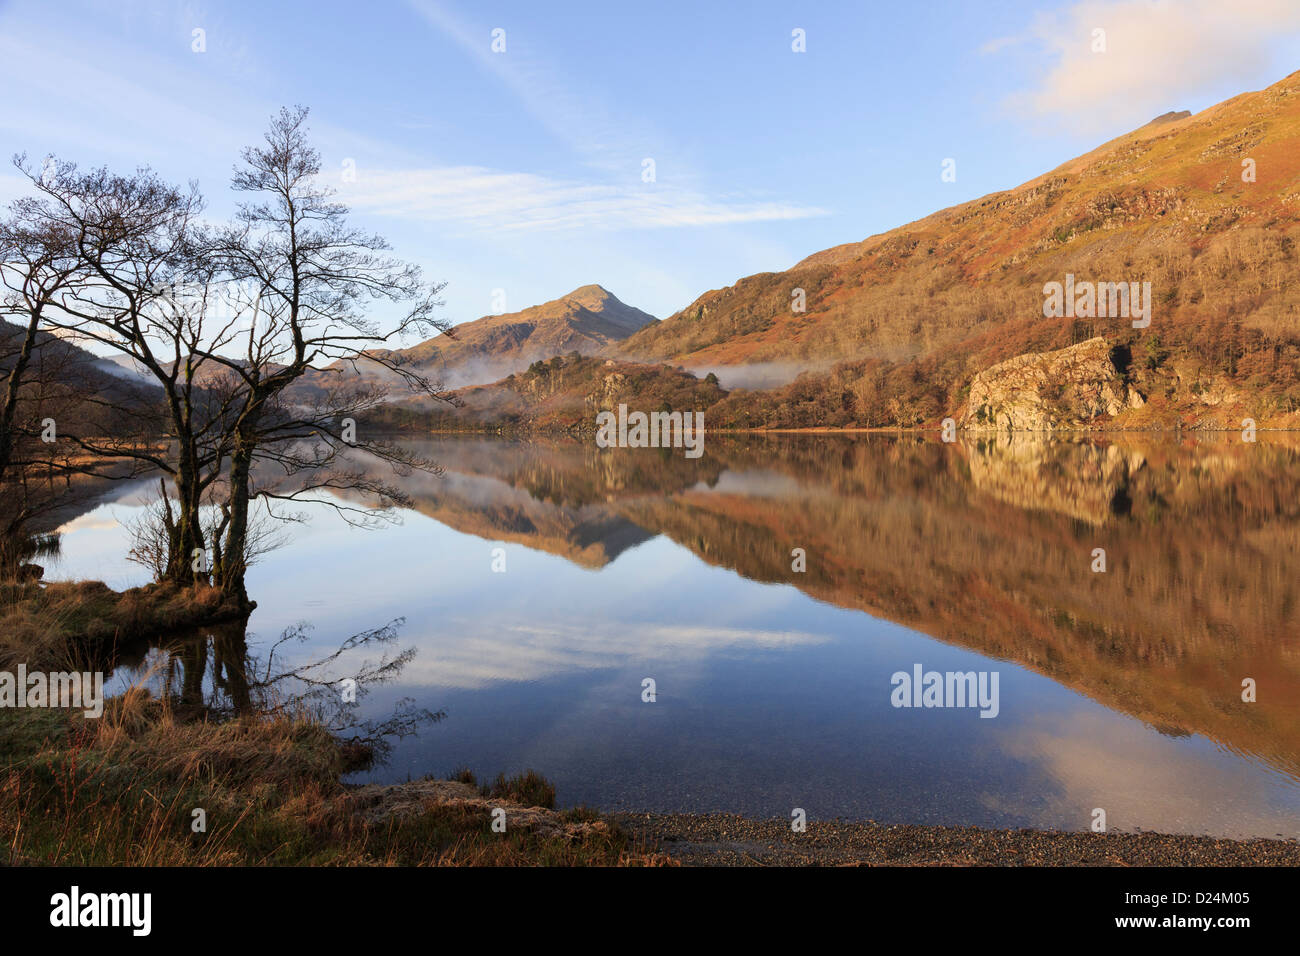 Scène tranquille avec vue sur Yr Aran et des reflets d'eau dans le lac Llyn Gwynant dans les montagnes du parc national de Snowdonia. Pays de Galles du Nord Grande-Bretagne Banque D'Images